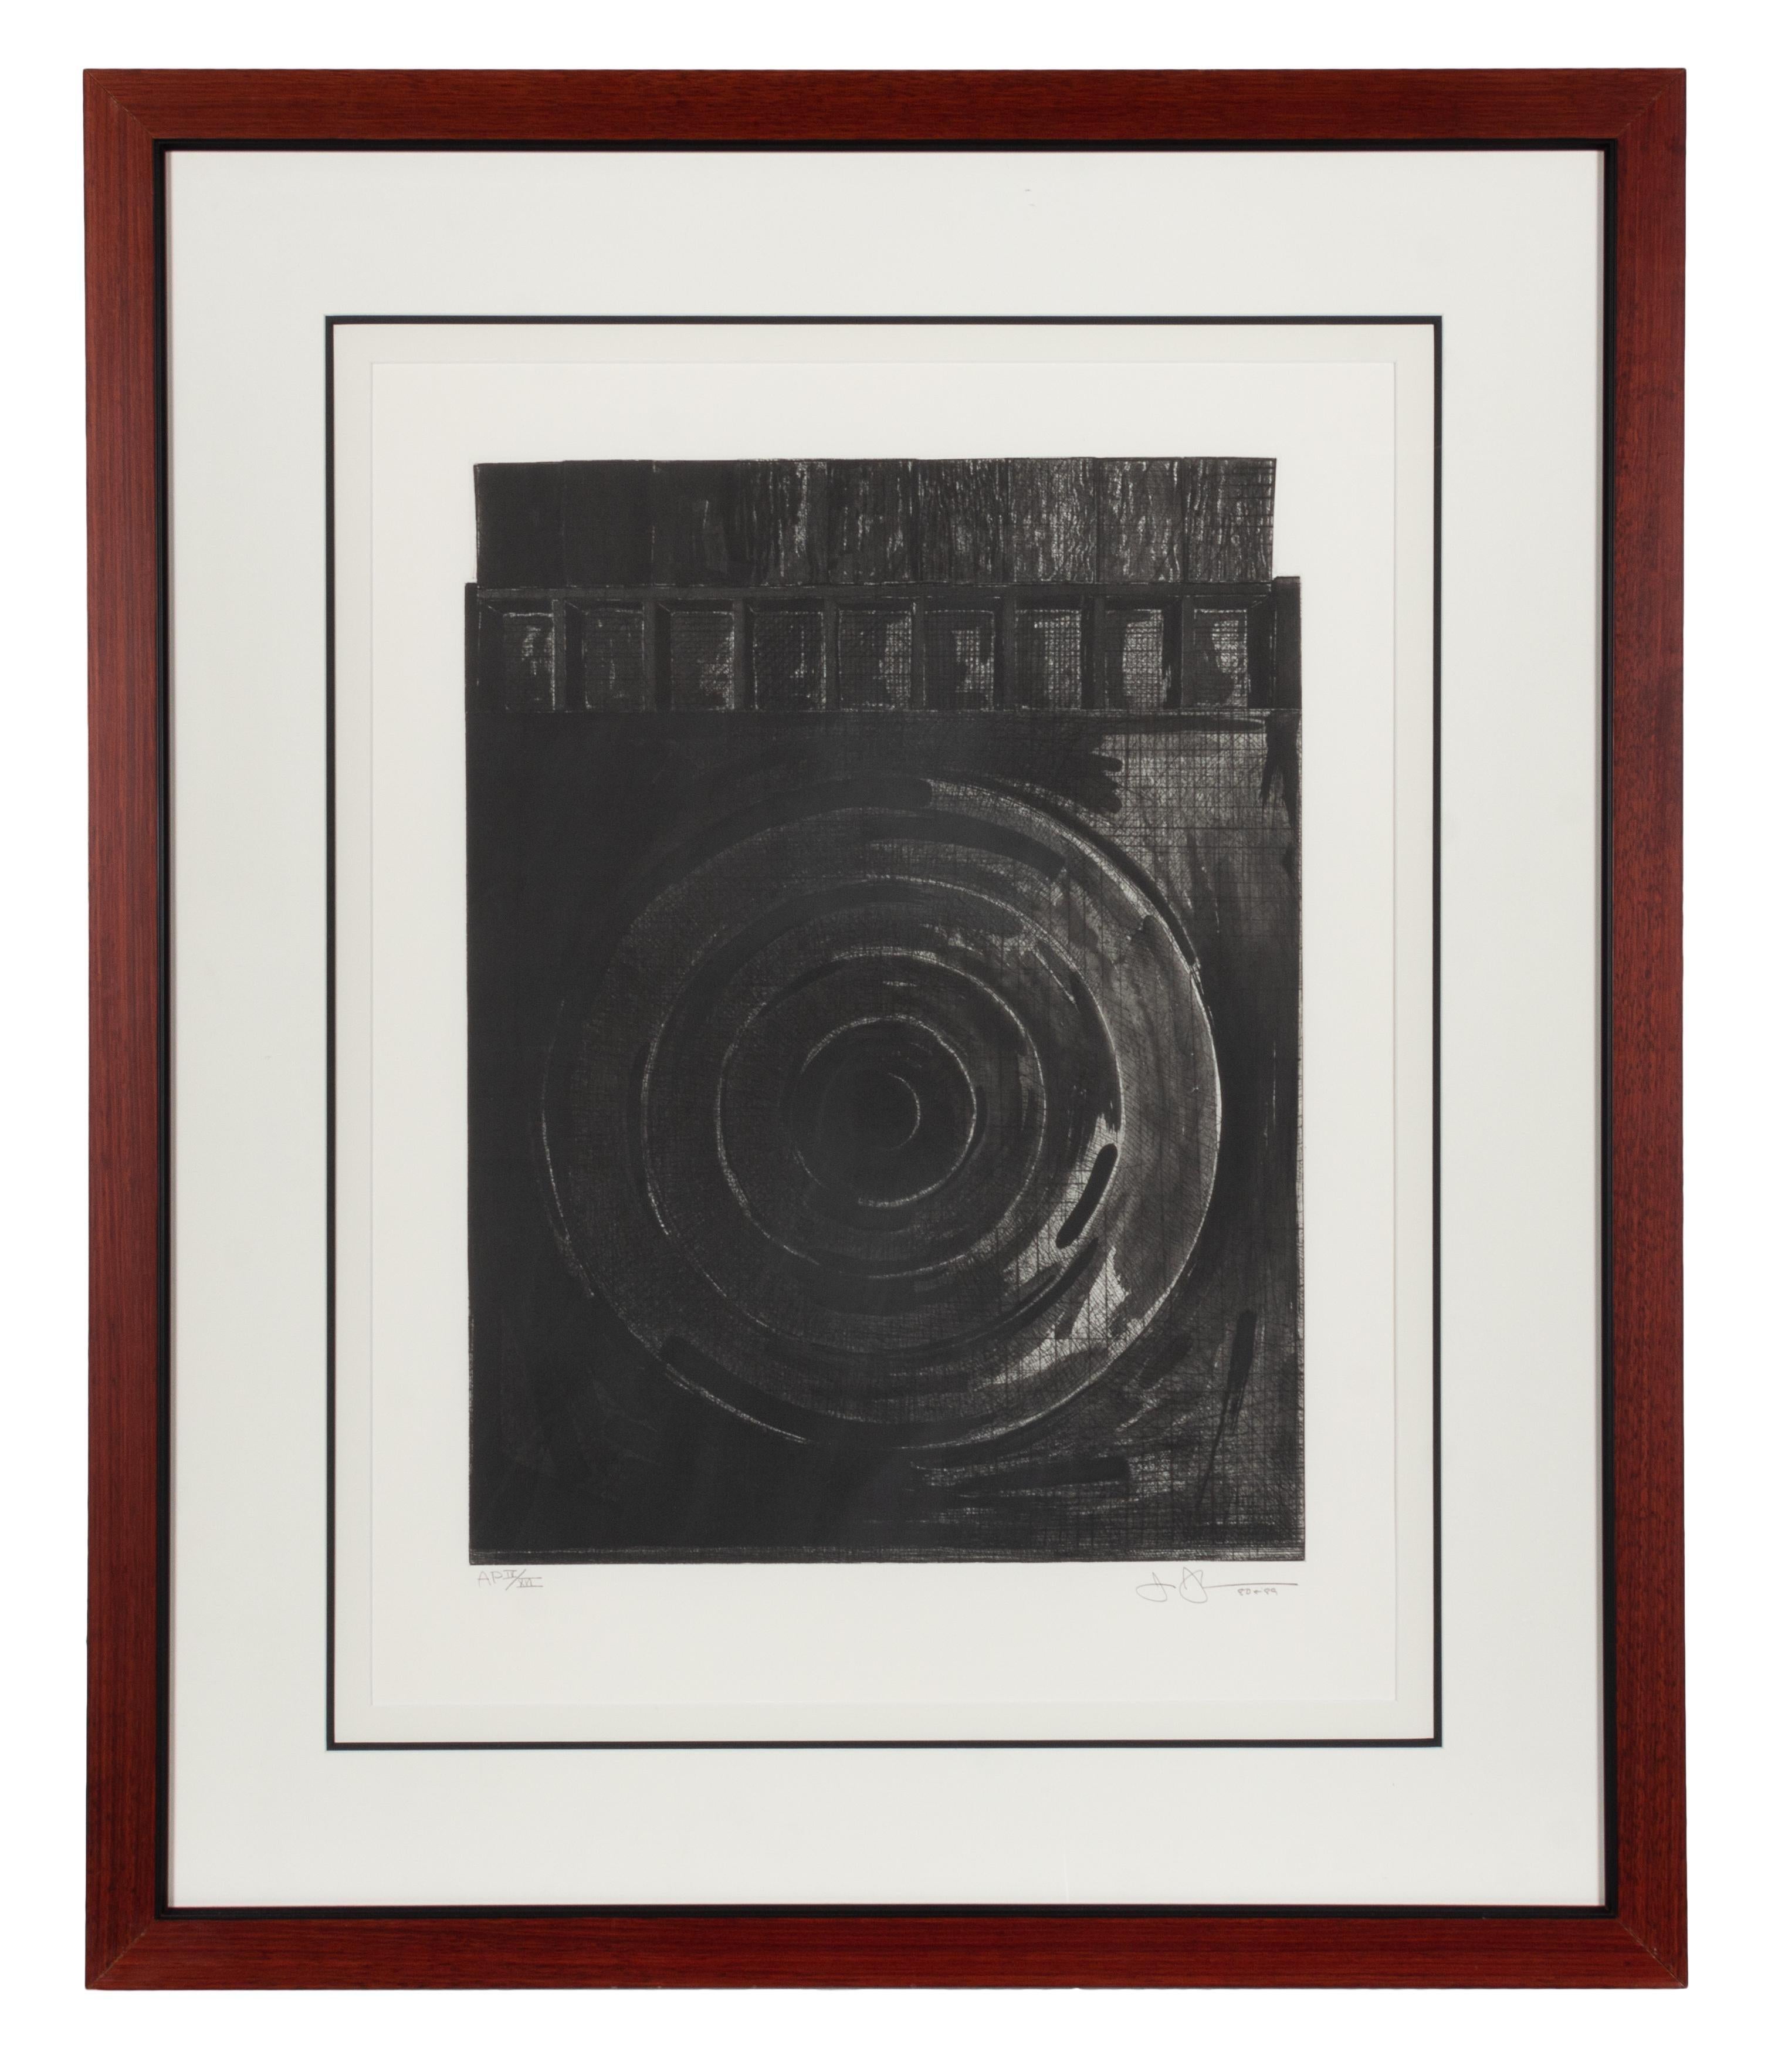 Target mit Gipsguss (Schwarz-Weiß) (Abstrakter Expressionismus), Print, von Jasper Johns